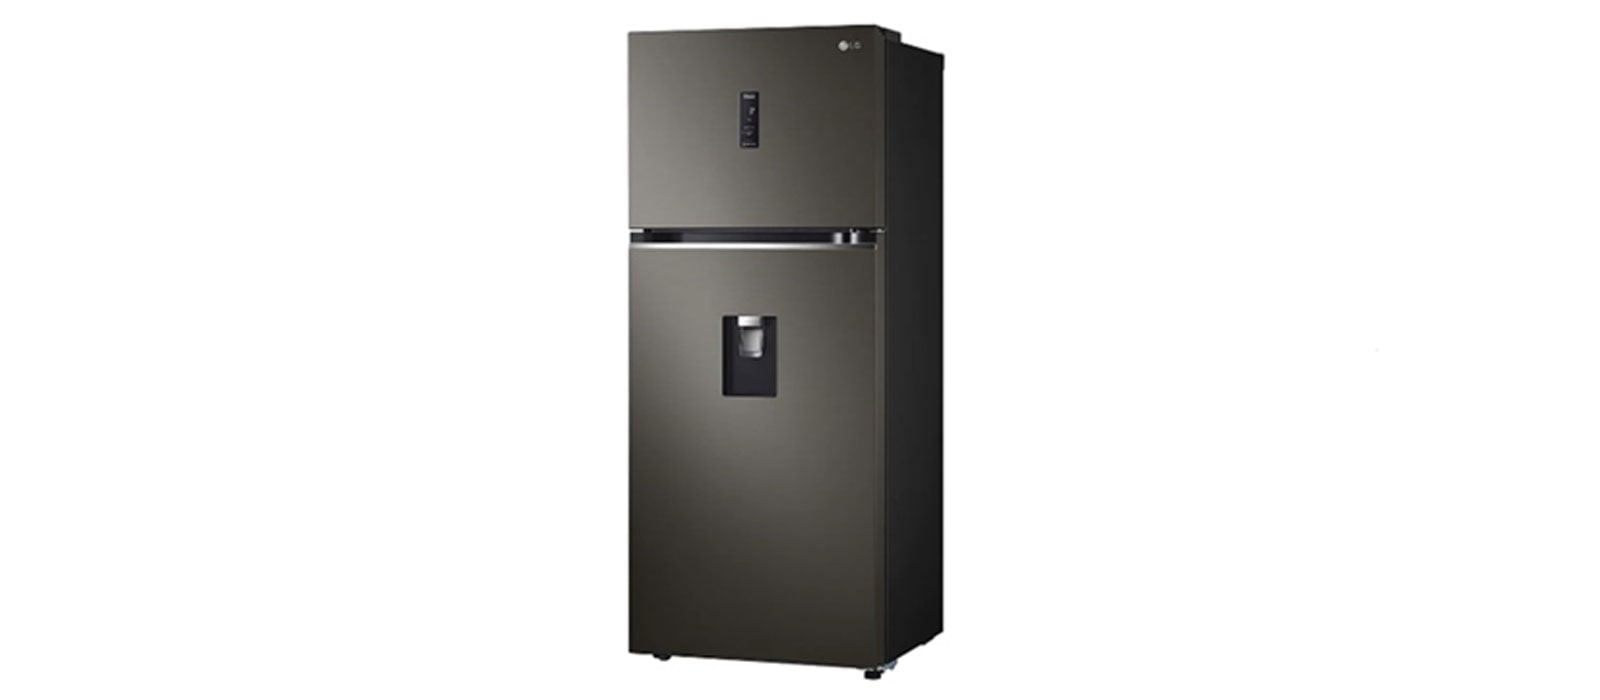 ตู้เย็น 2 ประตู เครื่องใช้ไฟฟ้าในครัวเรือนเลือกซื้ออย่างไรให้เหมาะสมและประหยัดไฟ